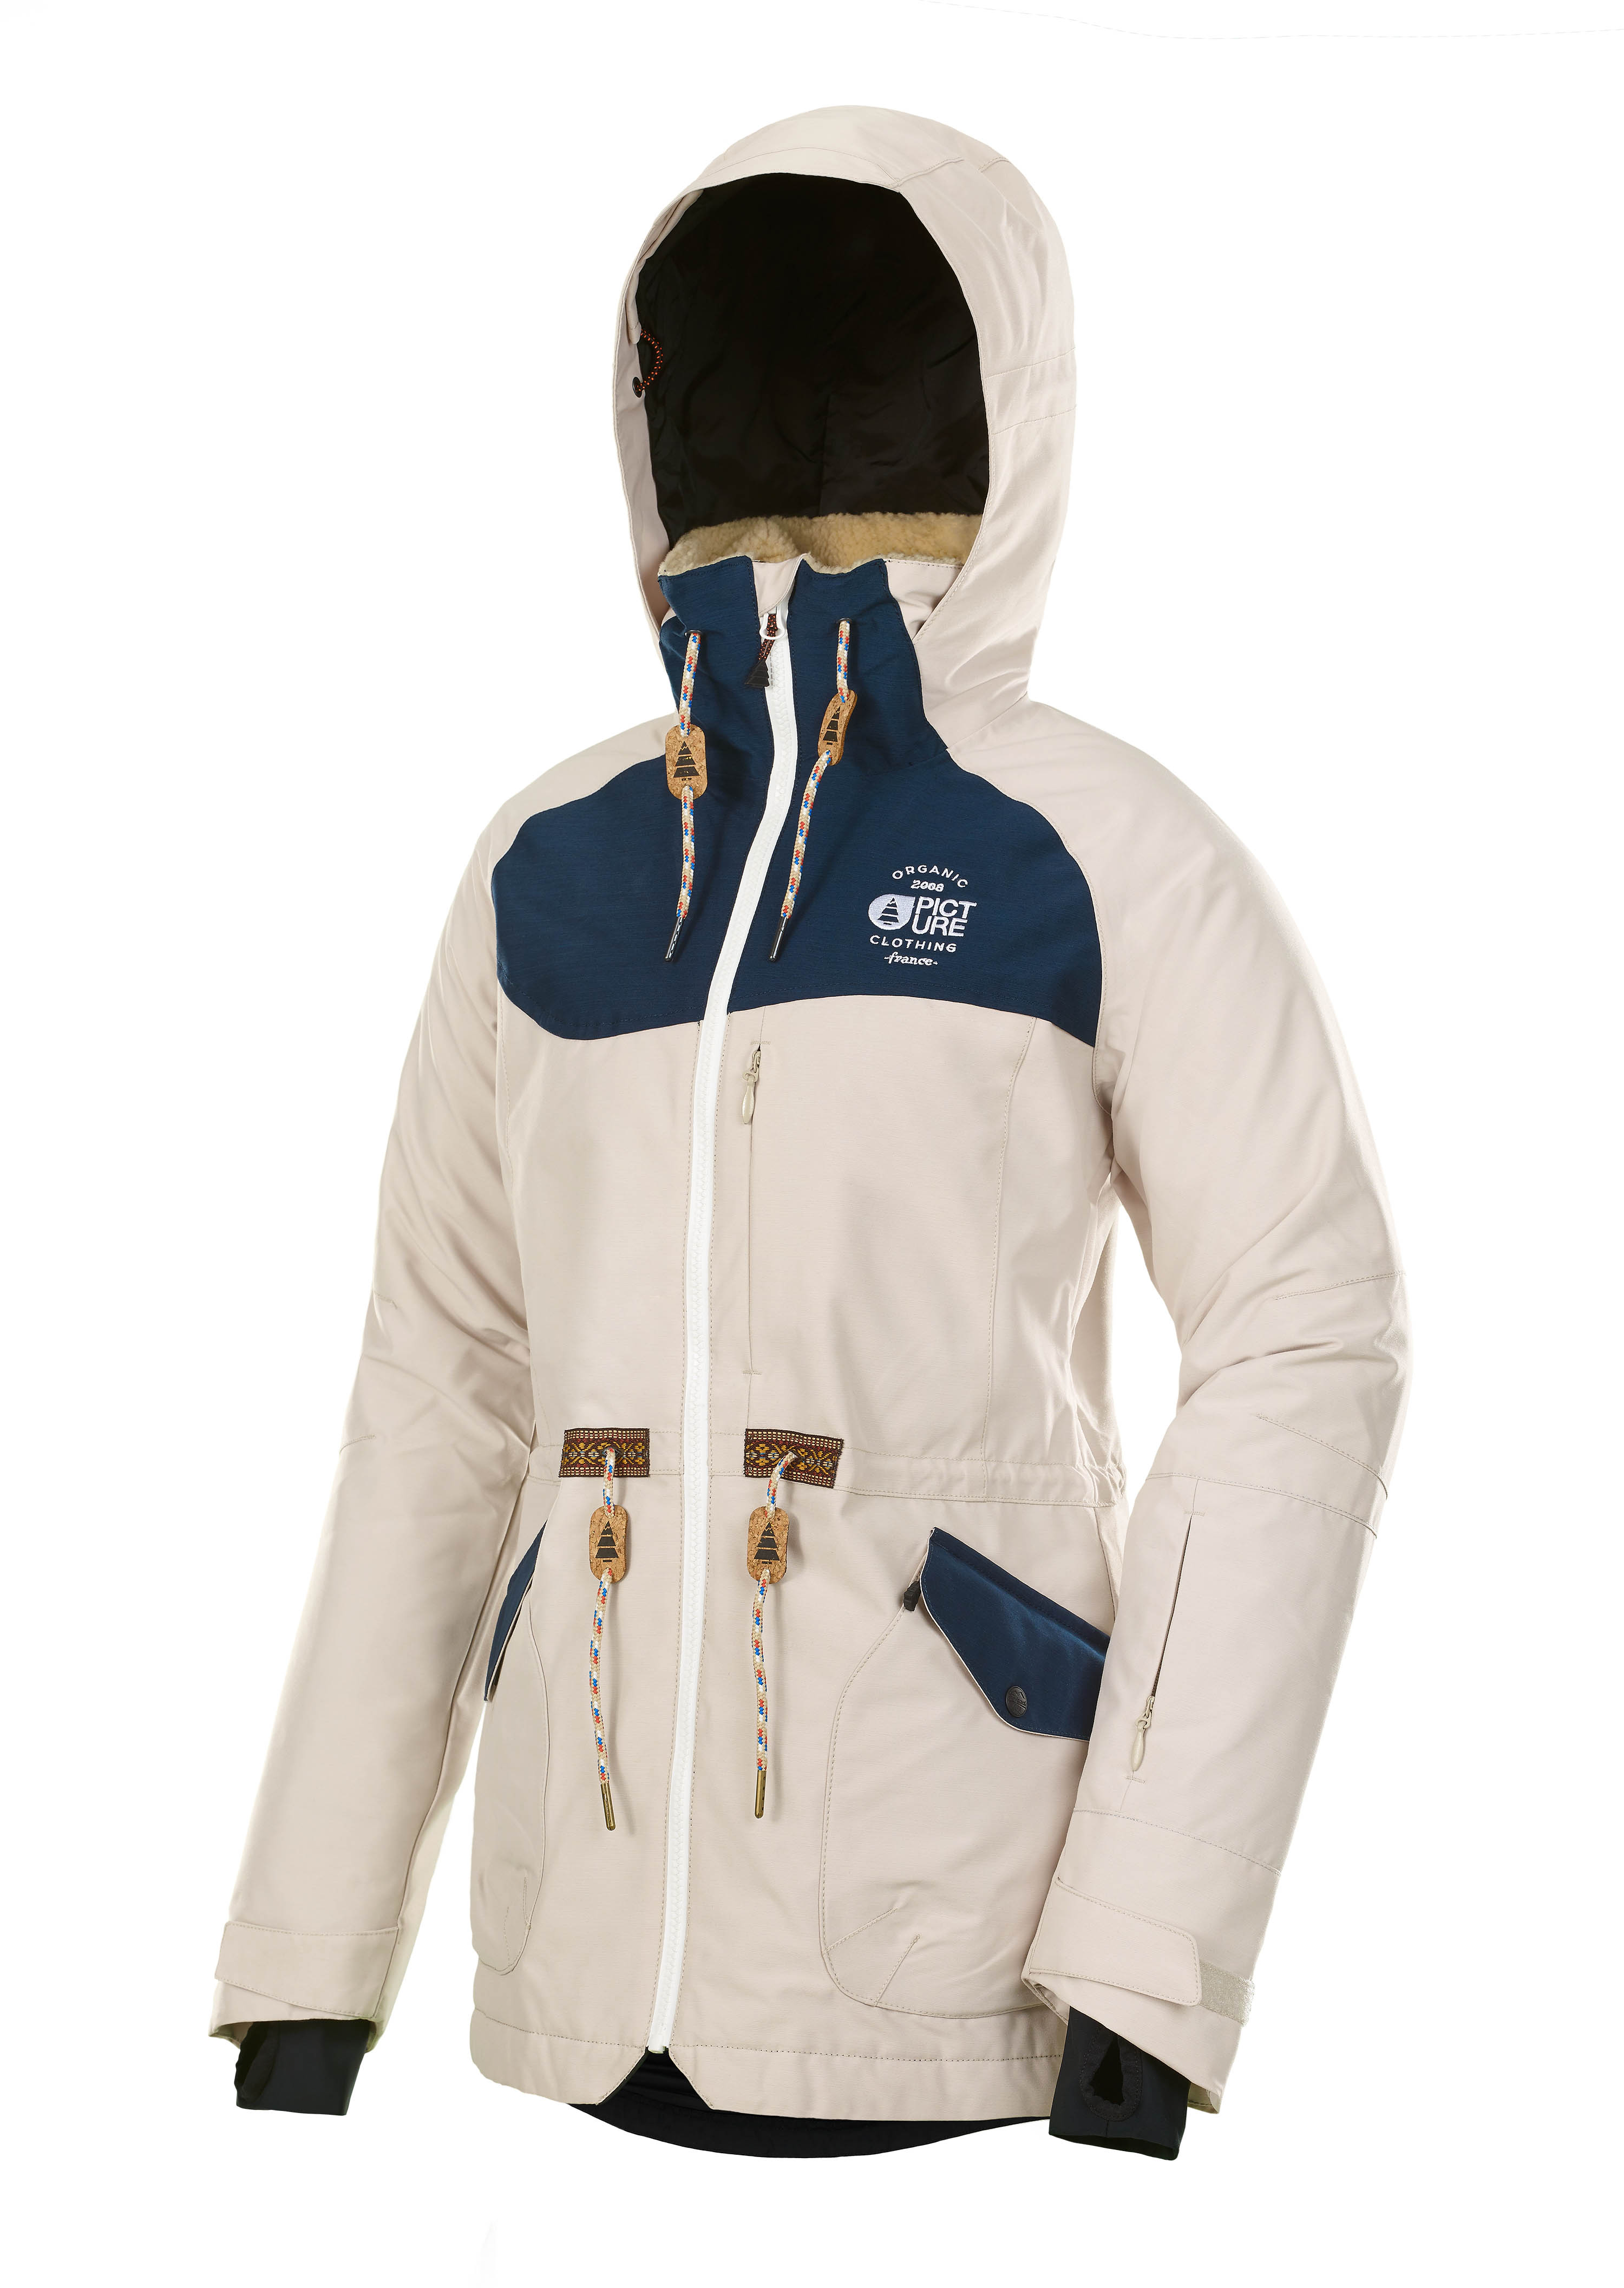 PICTURE Damen Skijacke APPLY - beige mieten | DROPKID Outfitters - Online  Vermietung für Ski- & Snowboardbekleidung